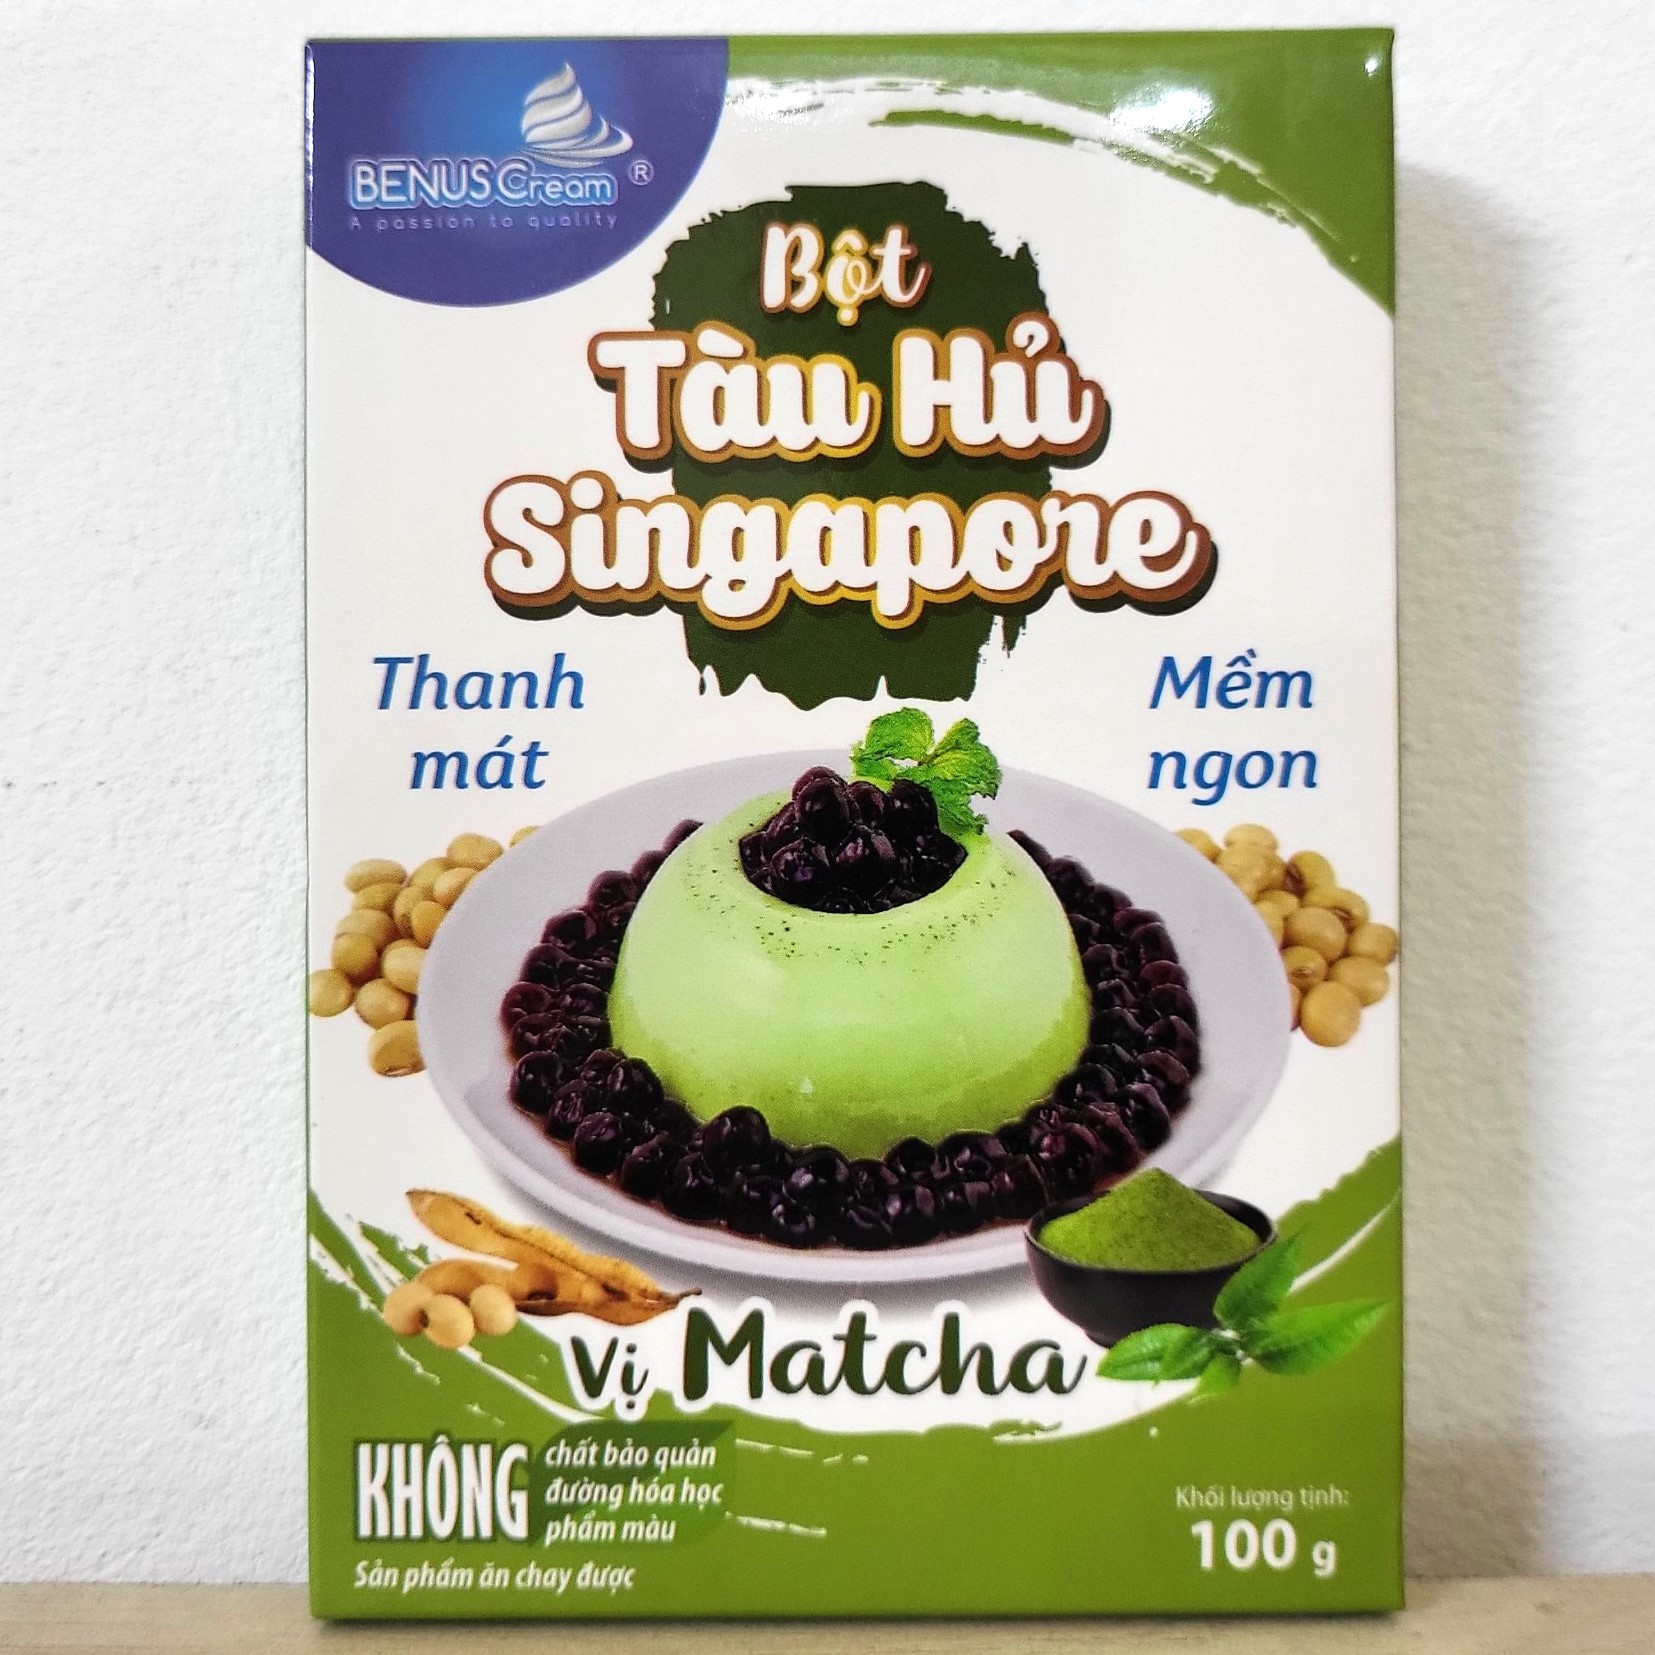 BENUSCREAM Hộp T HỦ X LÁ 100g BỘT TÀU HỦ SINGAPORE VỊ MATCHA Tofu Pudding